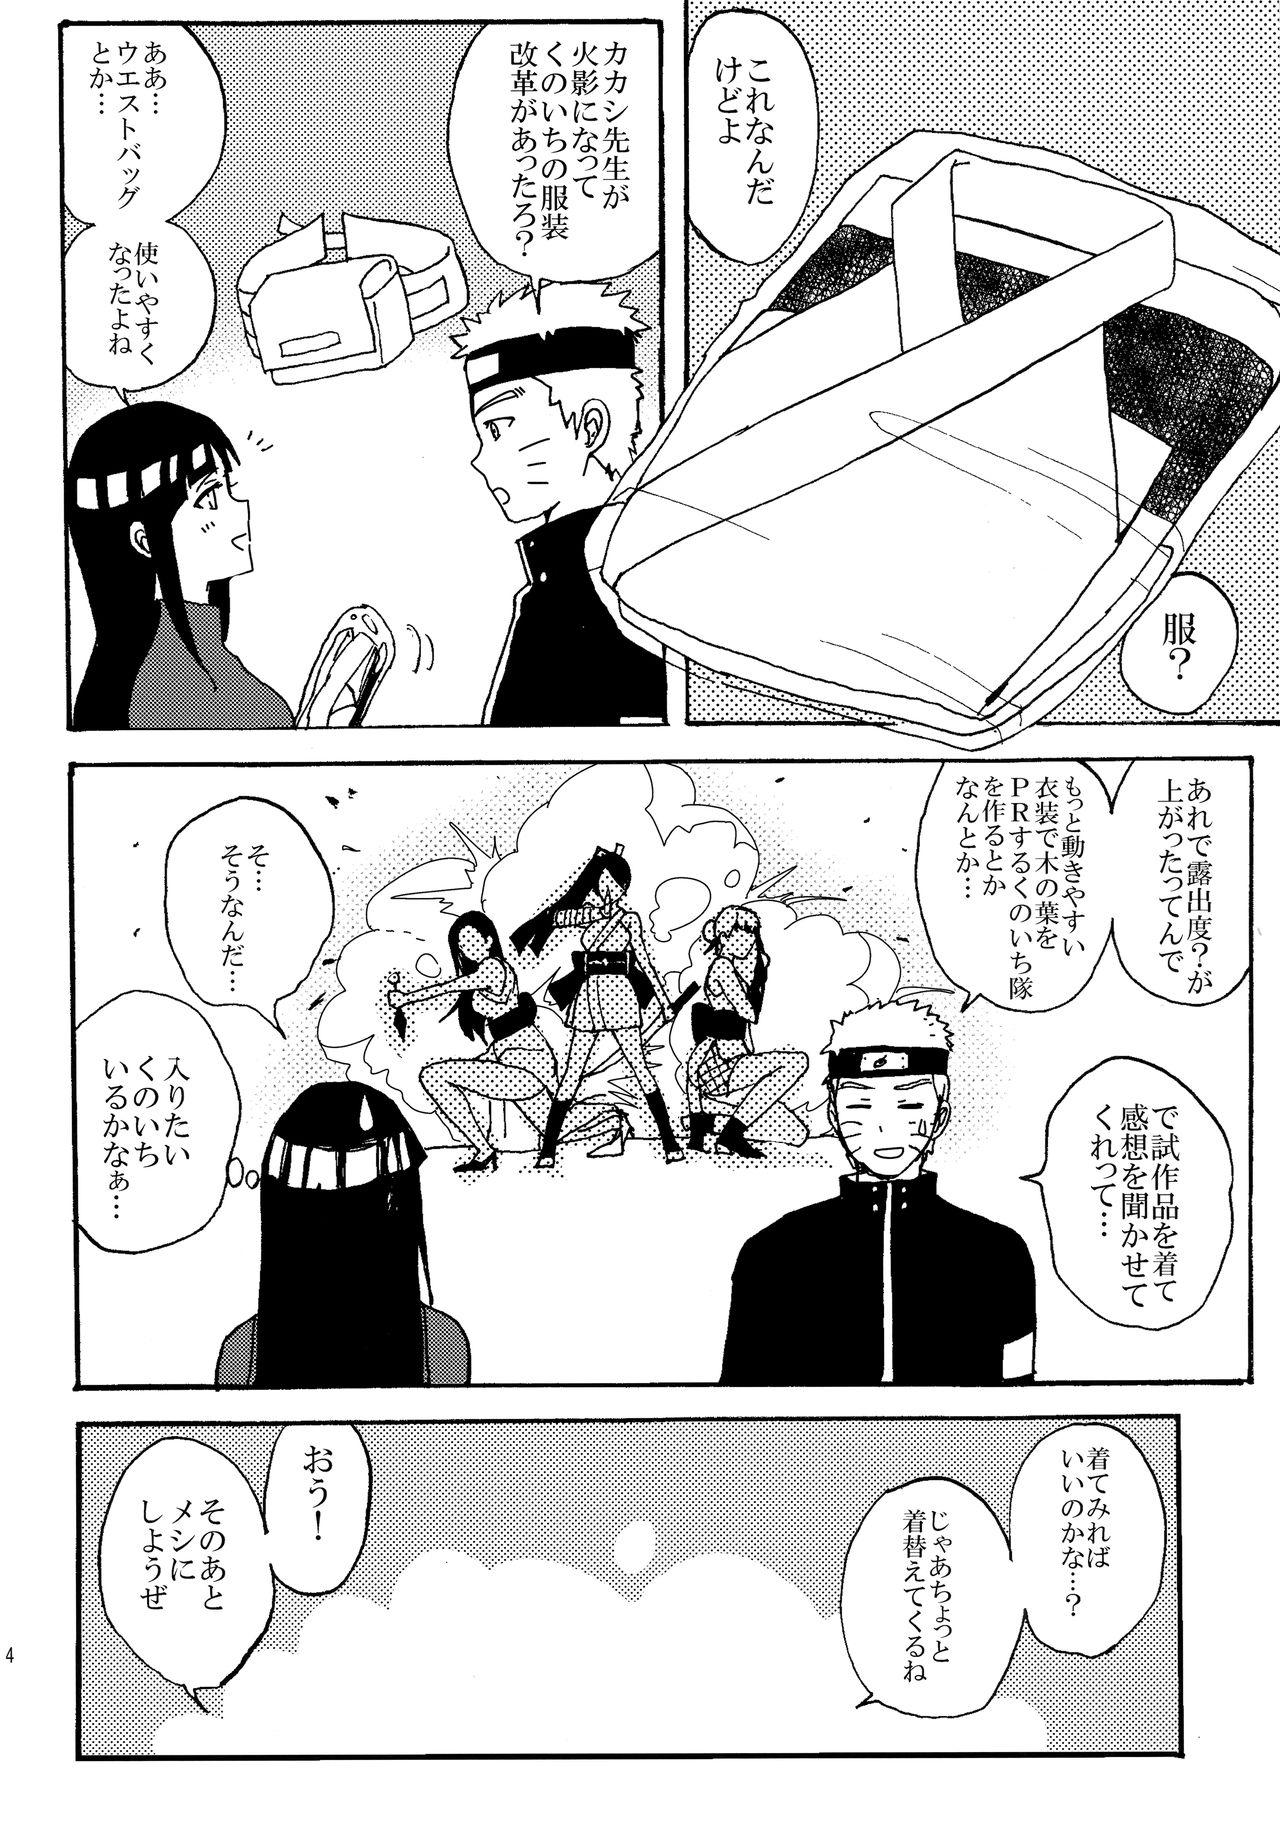 Milfporn Shinkon Hinata no Kunoichi Cosplay datteba yo! - Naruto Shavedpussy - Page 3